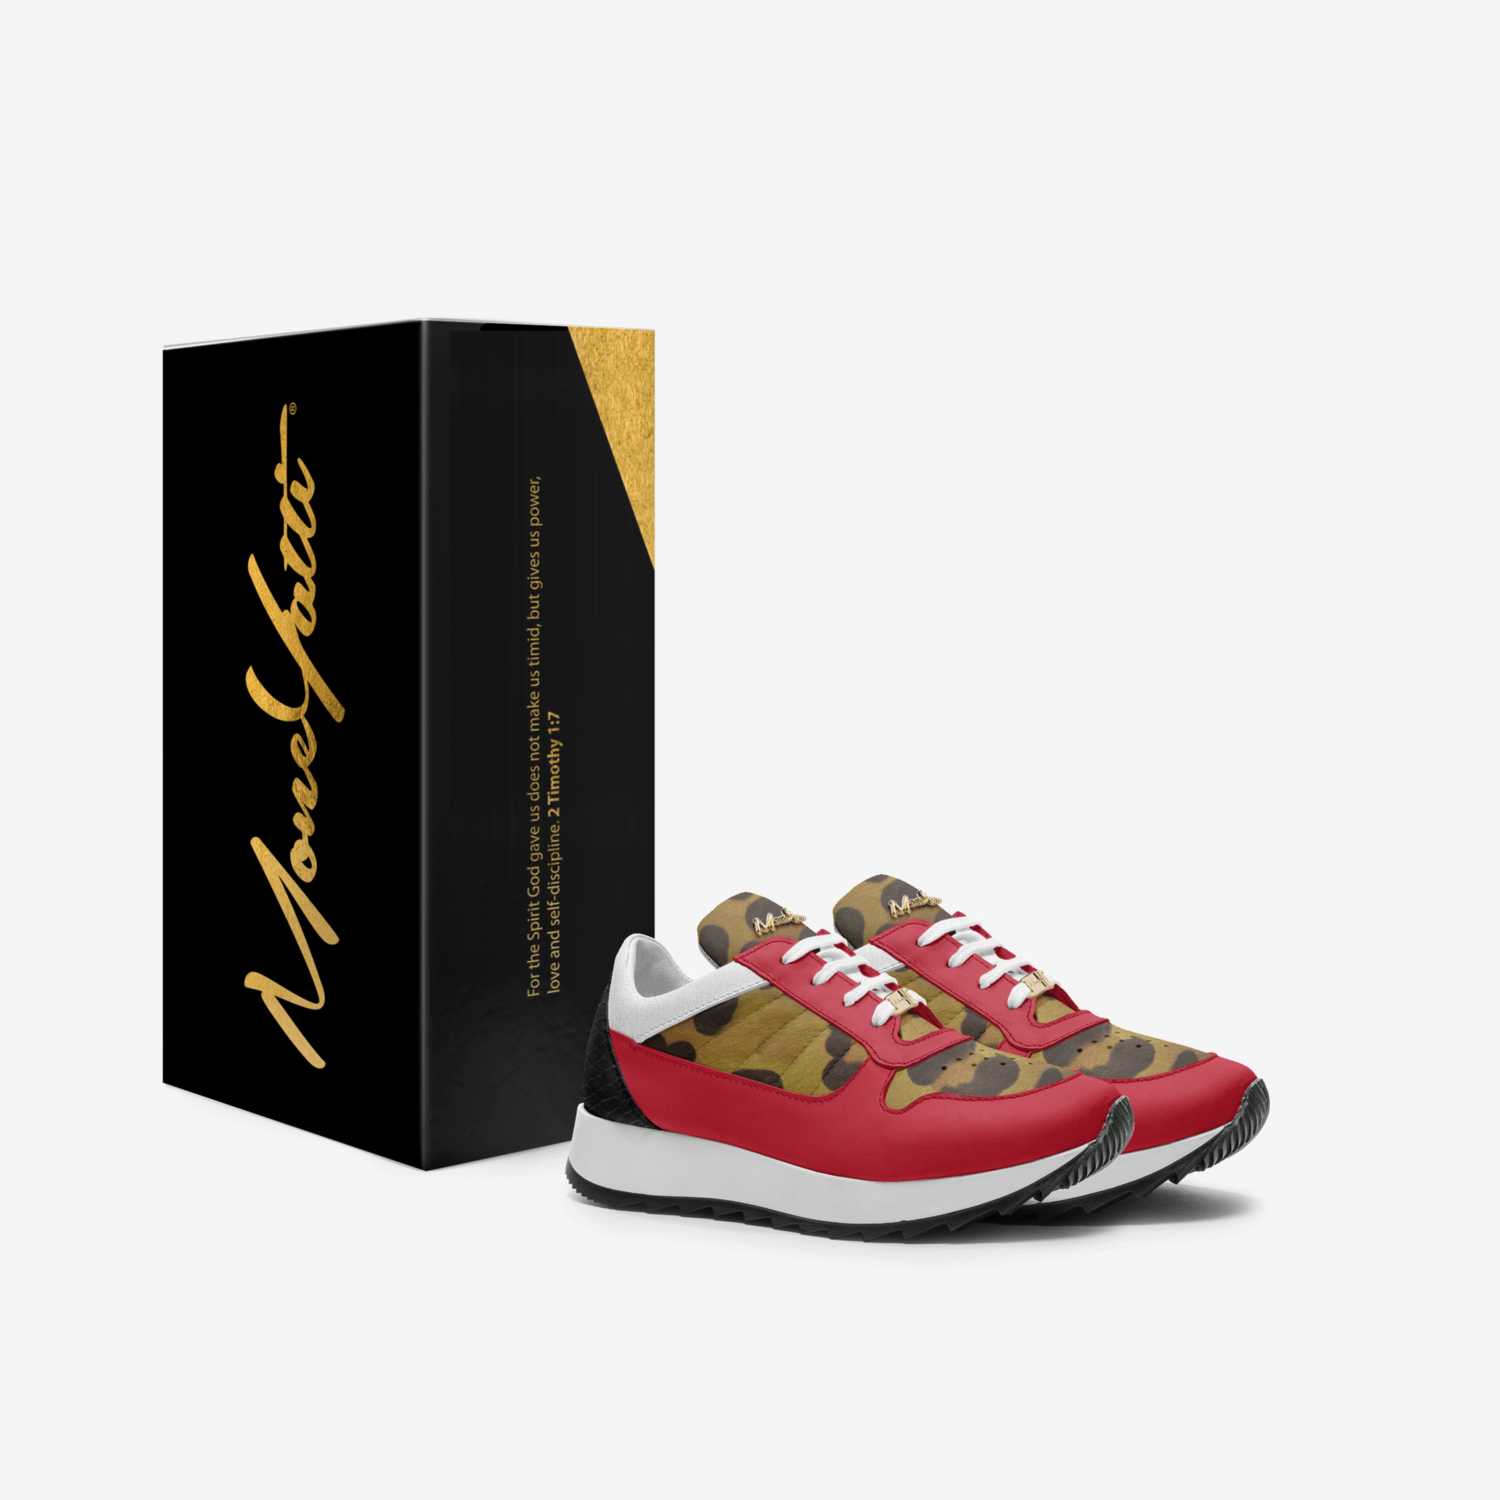 MONEYATTI KIDLW04 custom made in Italy shoes by Moneyatti Brand | Box view